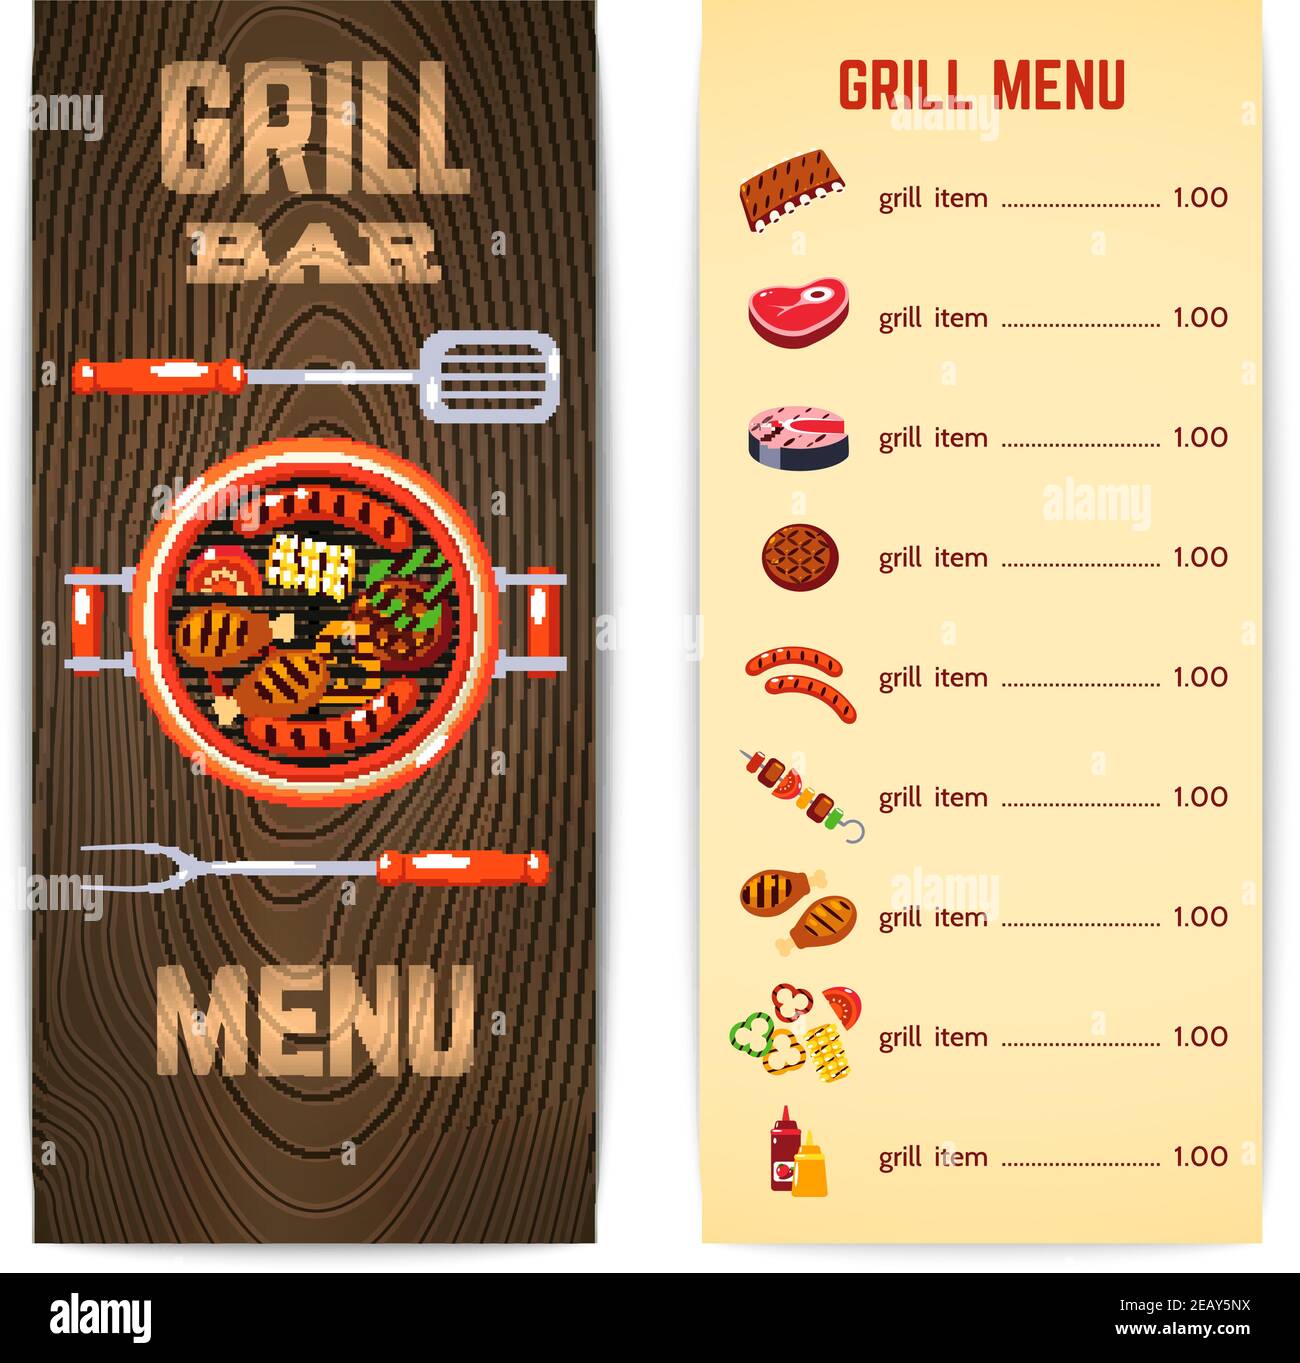 Menu du restaurant grill avec barbecue plats de viande illustration  vectorielle Image Vectorielle Stock - Alamy